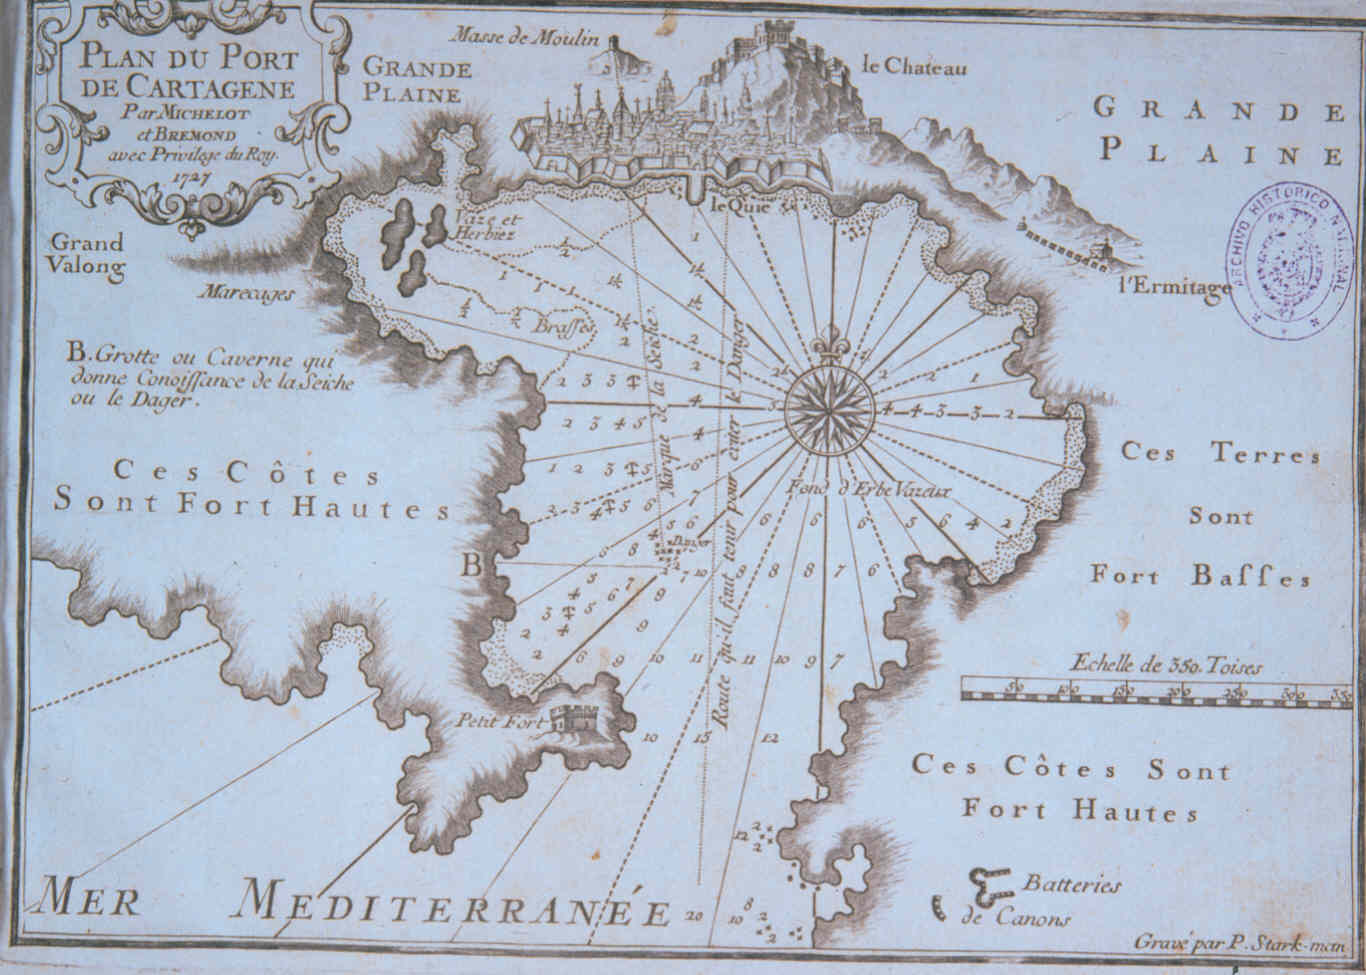 Plano del Puerto de Cartagena por Michelot y Bremond con privilegio del Rey. 1727